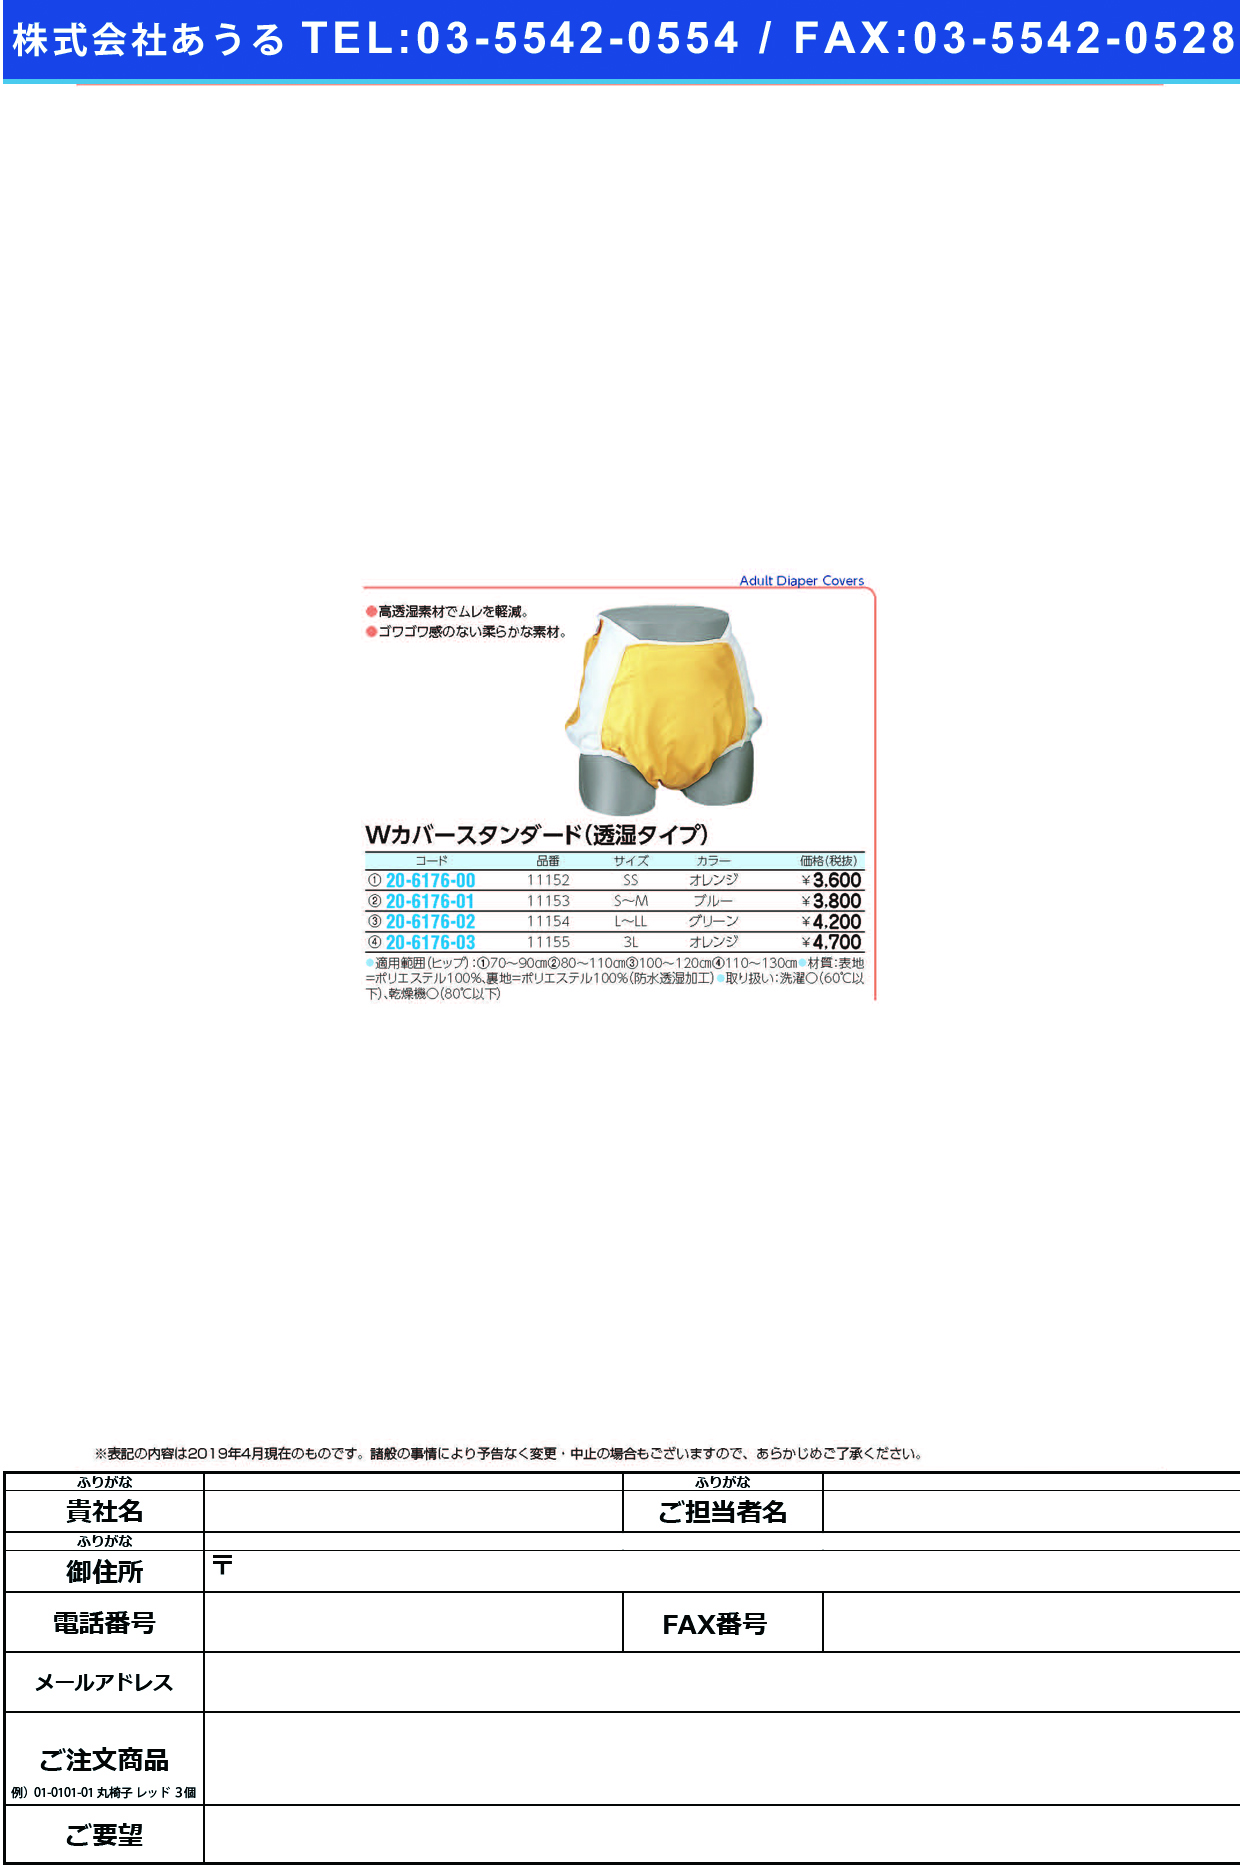 (20-6176-00)ハビナースＷカバースタンダード透湿 11152(SS)ｵﾚﾝｼﾞ ﾊﾋﾞﾅｰｽWｶﾊﾞｰｽﾀﾝﾀﾞｰﾄﾞ(ピジョンタヒラ)【1枚単位】【2019年カタログ商品】